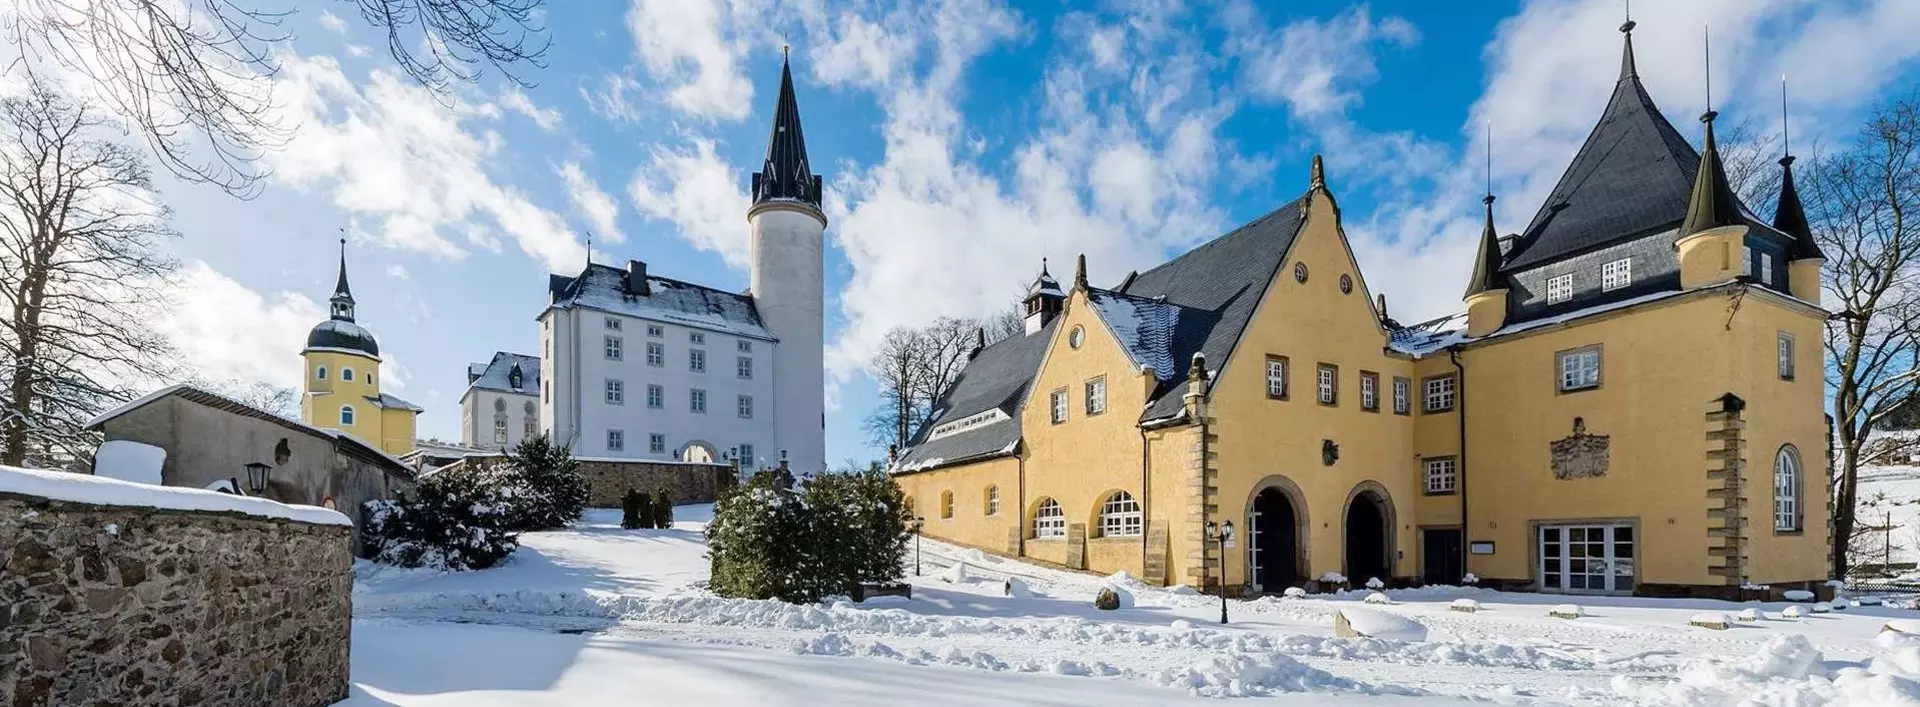 Übernachten im Schloss: Winterurlaub im Schloss Purschenstein erleben